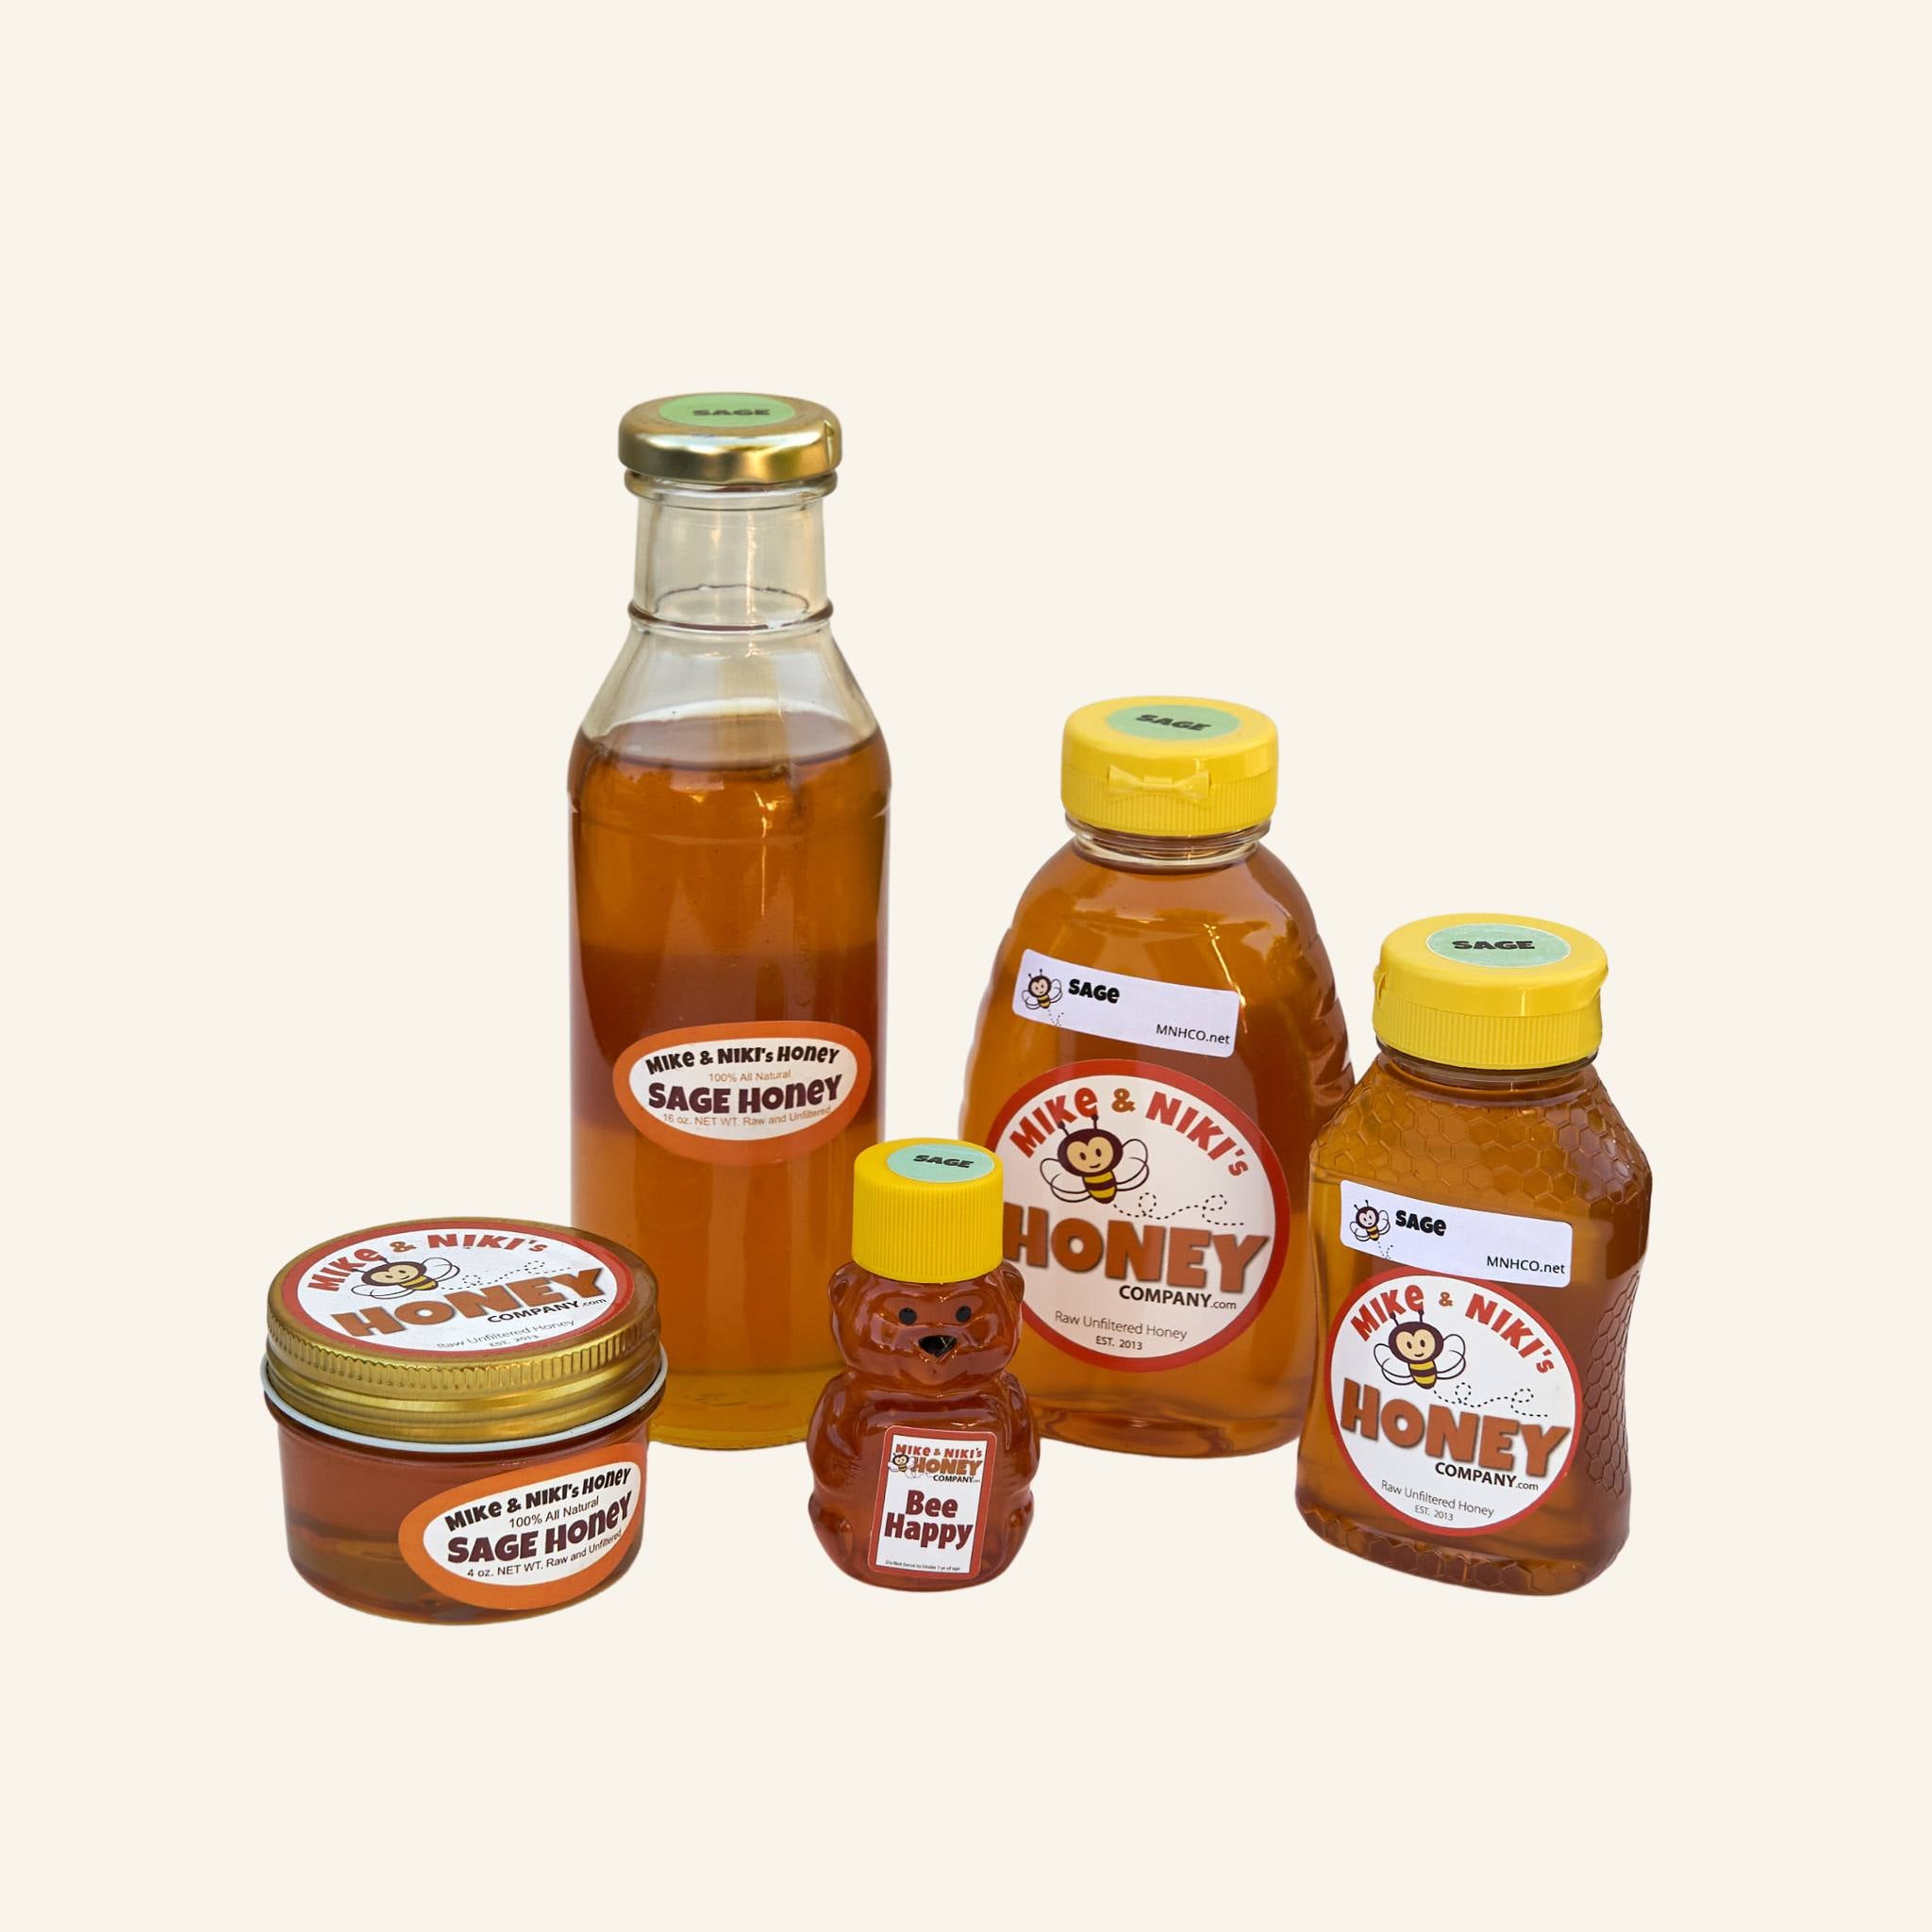 Mike & Niki's Honey Company